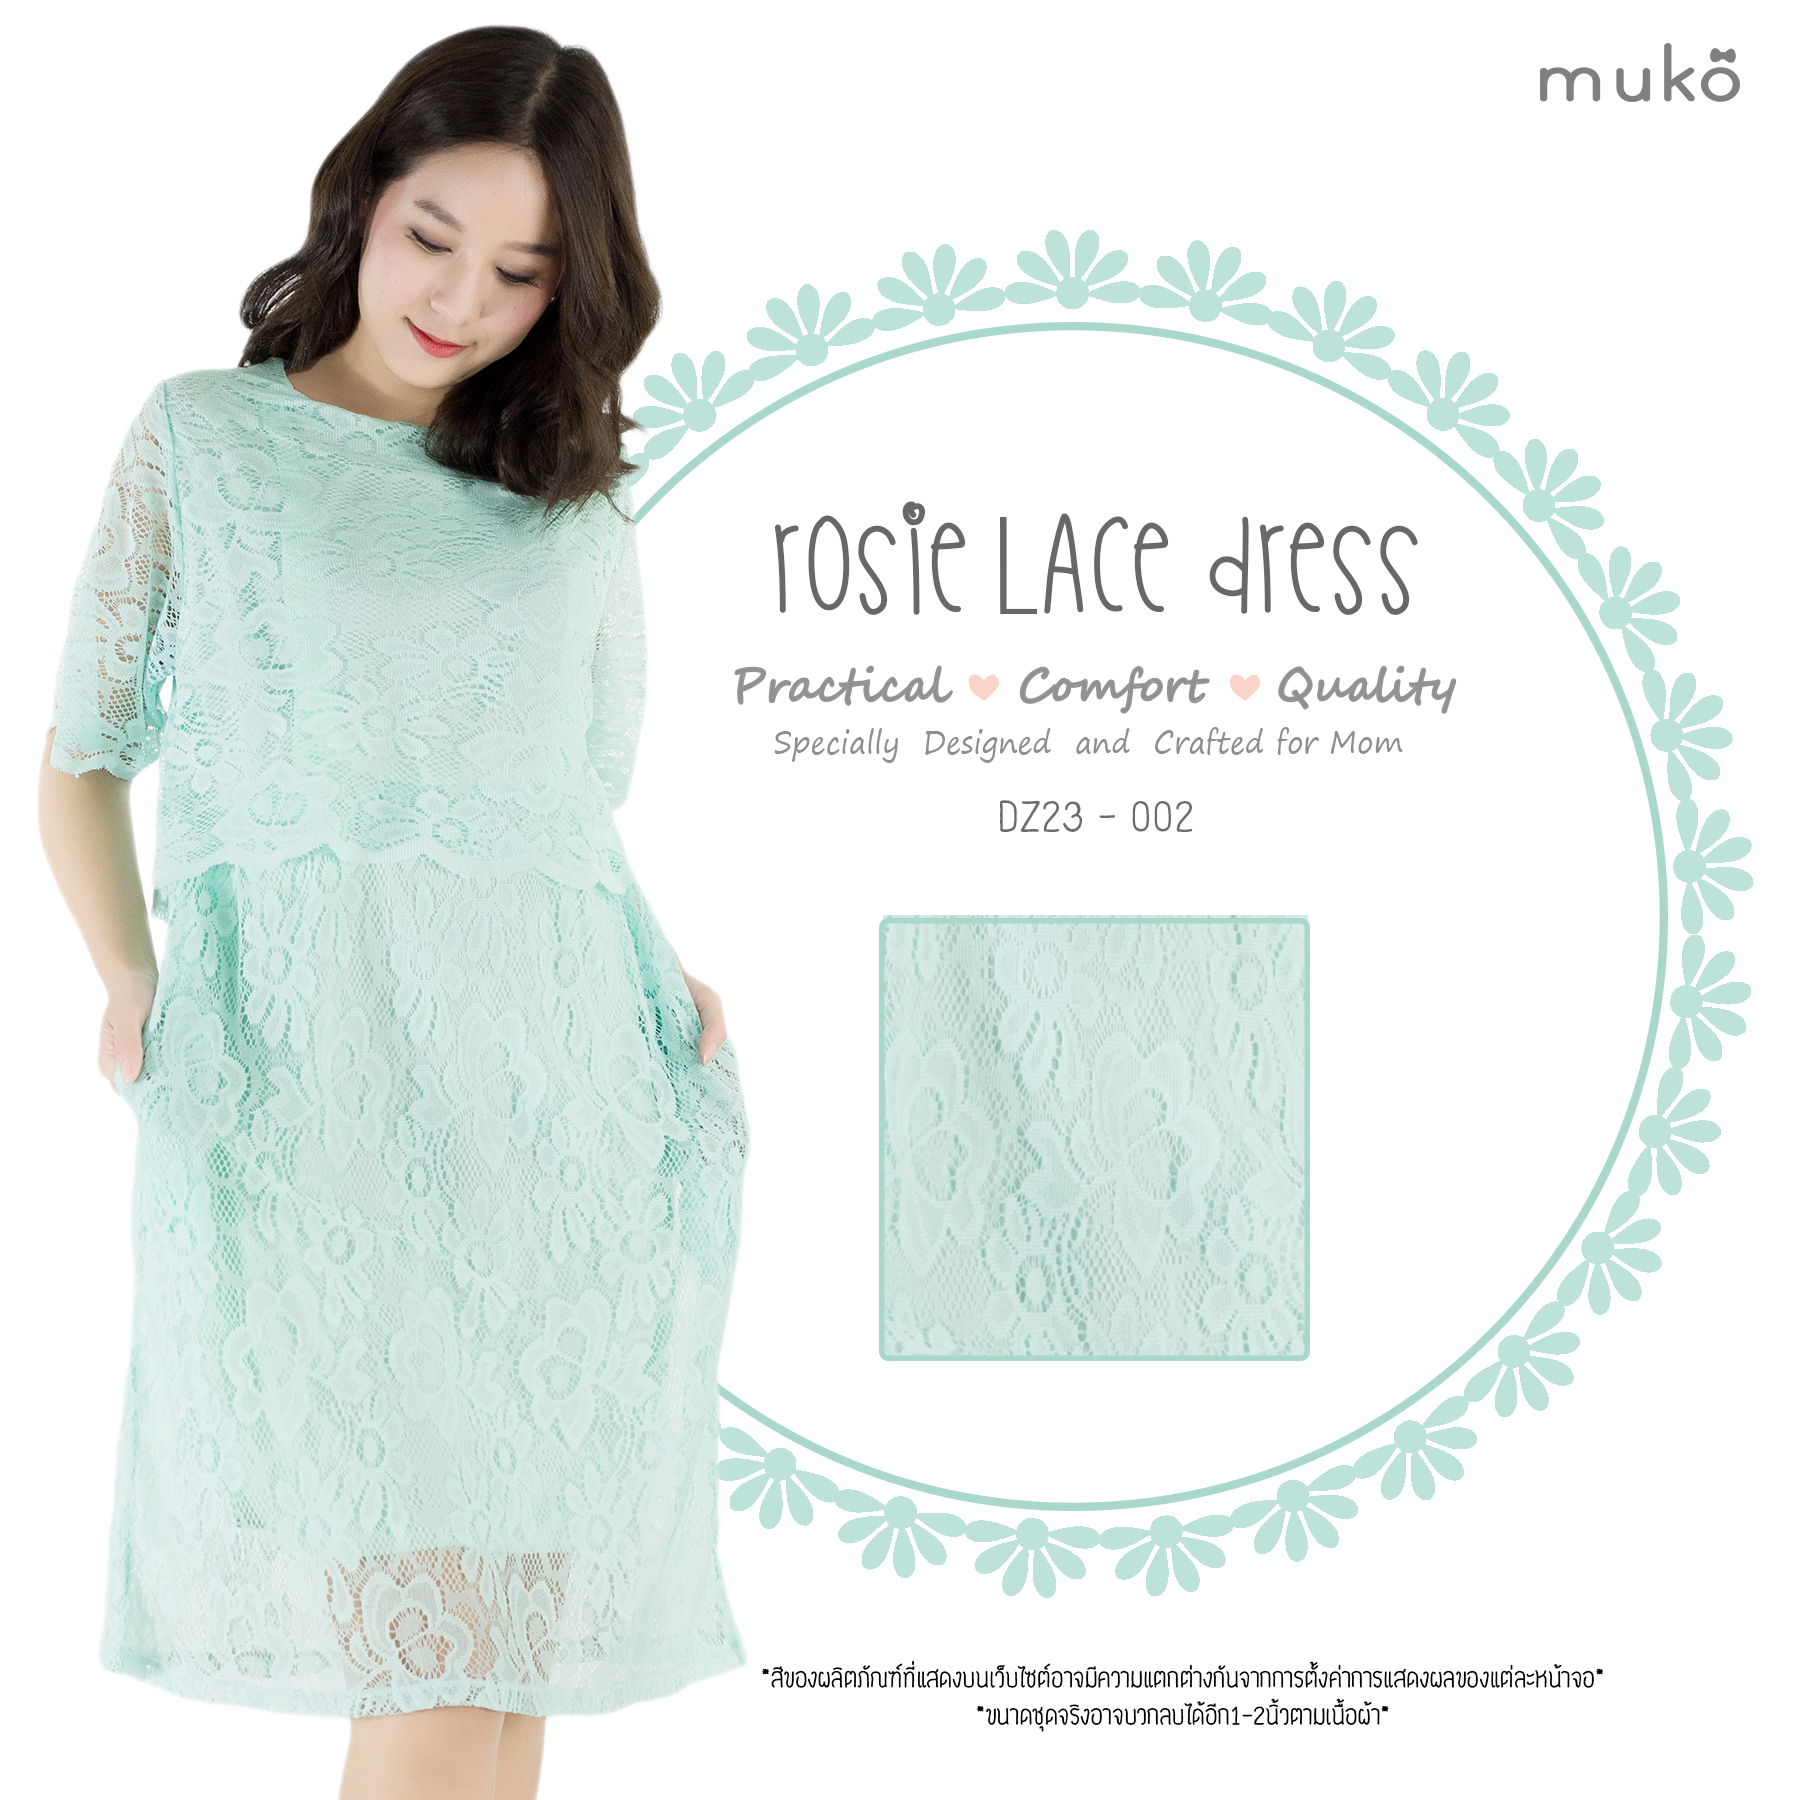 Muko Rosie Lace Dress เดรสเปิดให้นม คลุมท้อง DZ23-002  สีเขียวมิ้นท์